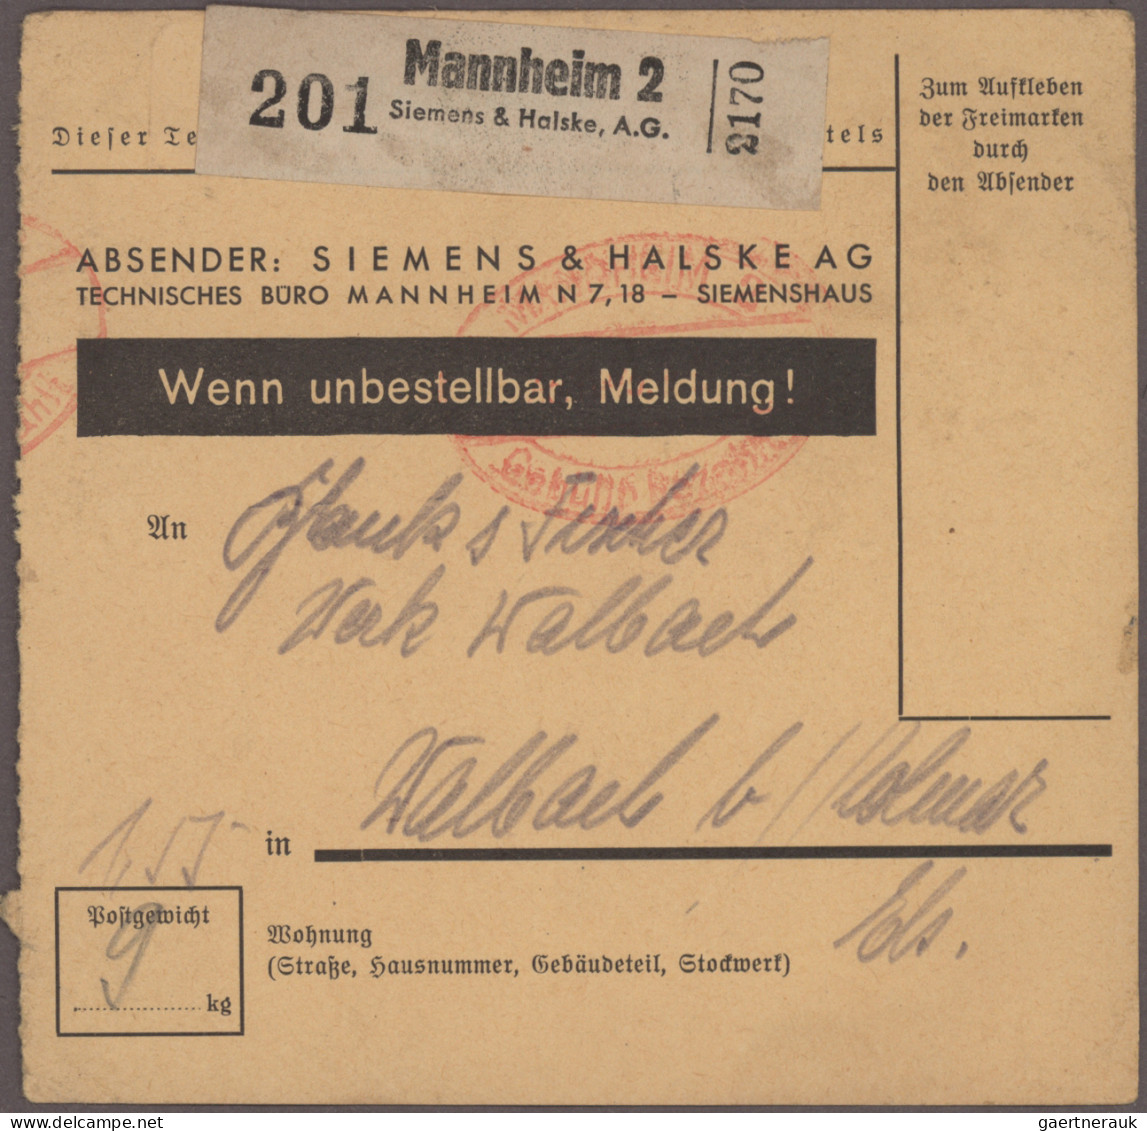 Deutsches Reich: 1874/1944, umfangreiche Partie von ca. 560 Briefen und Karten m